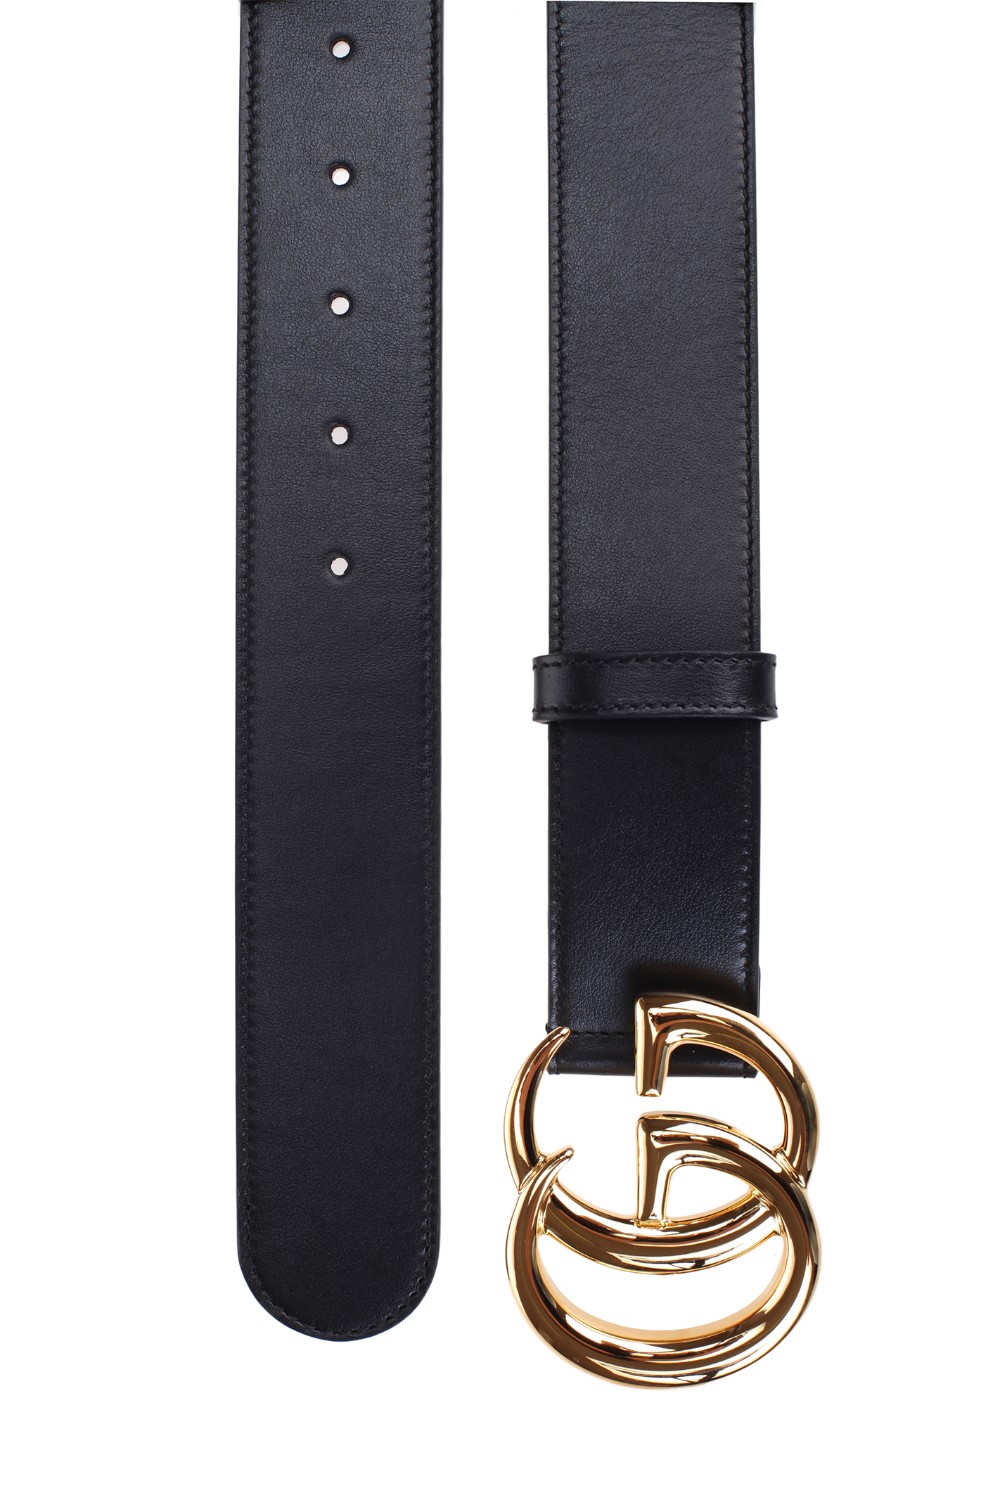 shop GUCCI Sales Cintura: Gucci cintura in pelle nera con la nuova Fibbia Doppia G.
Finiture color oro.
Fibbia Doppia G.
Fibbia: L 3,03" x A 2,36".
Altezza 4cm.
Fabbricato in Italia.. 400593 0YA0O-1000 number 6647921